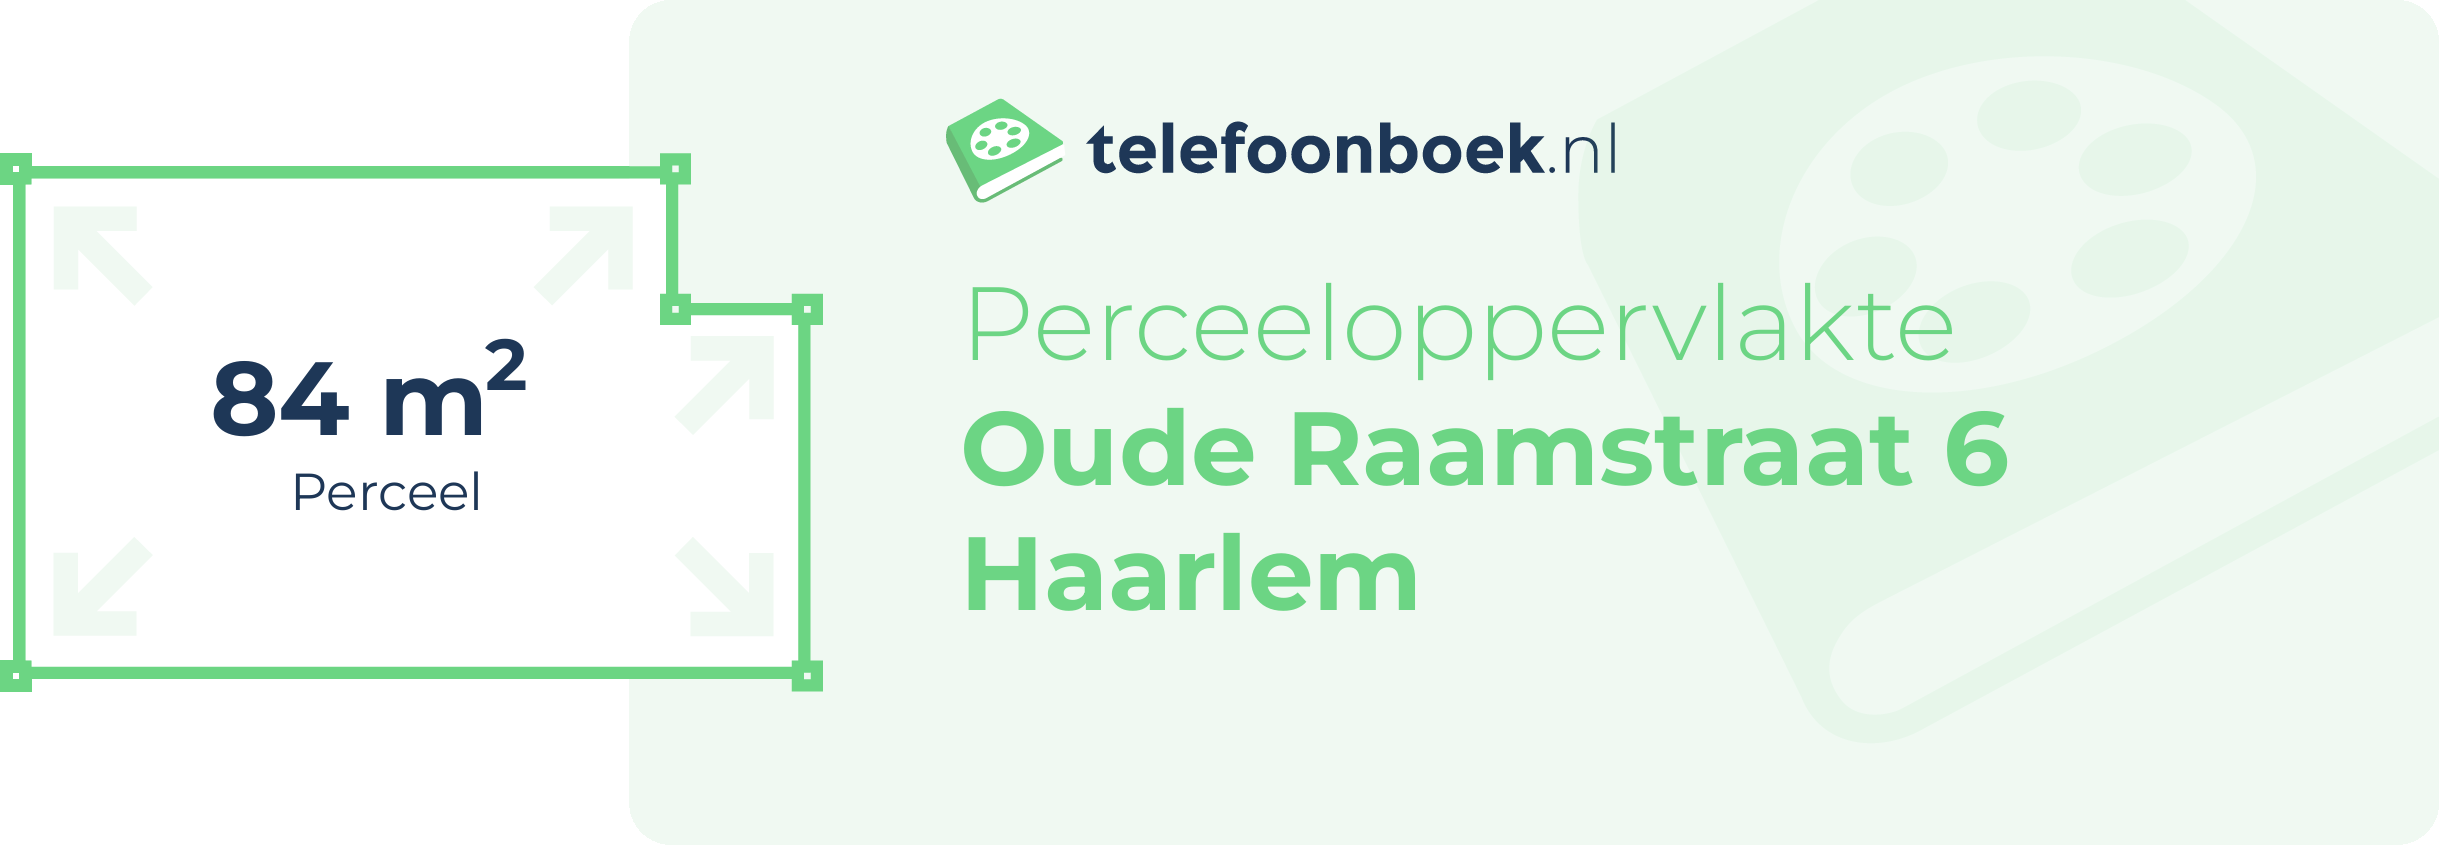 Perceeloppervlakte Oude Raamstraat 6 Haarlem